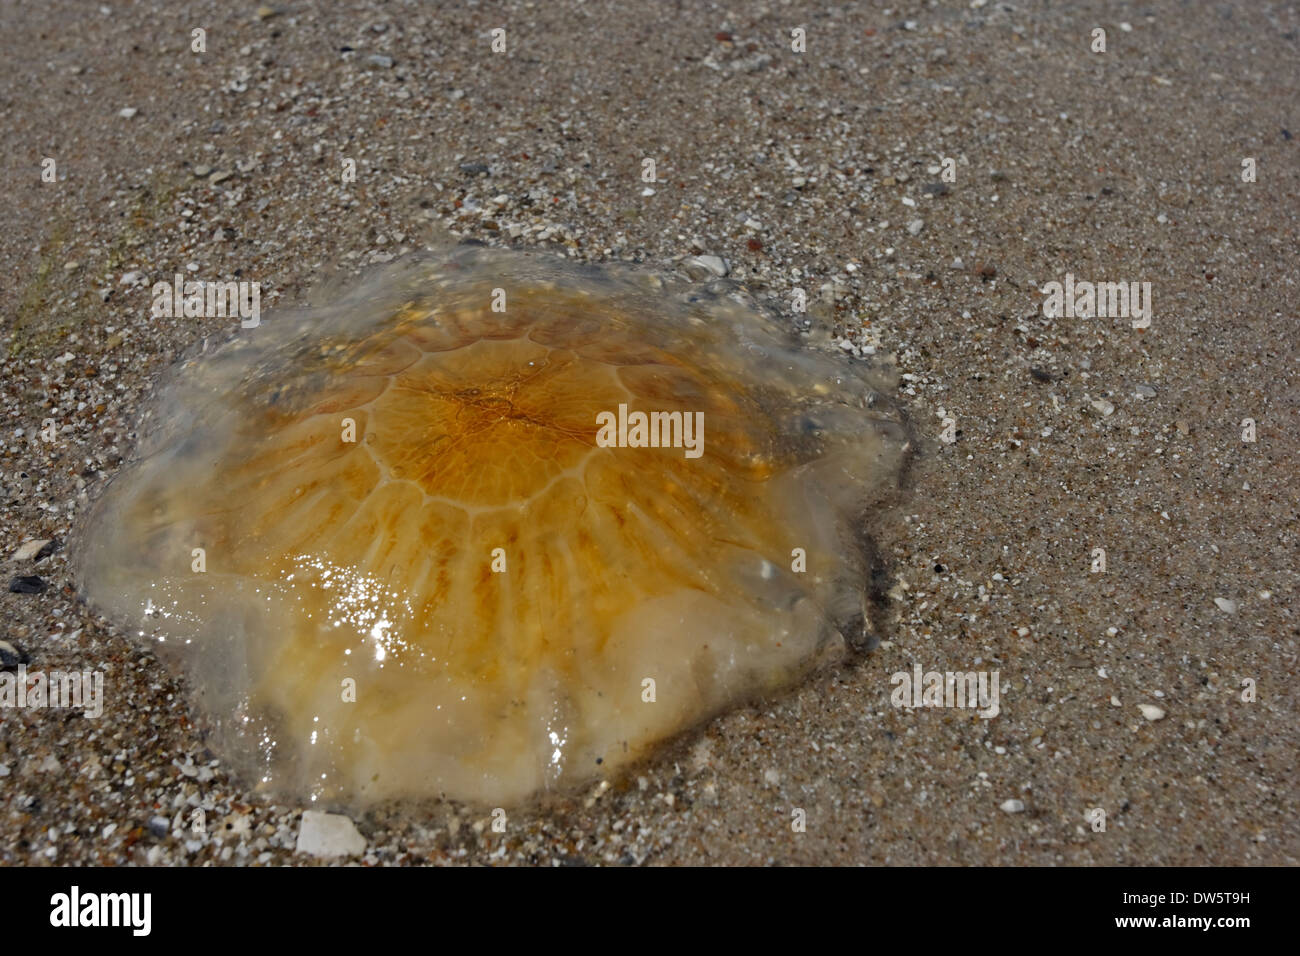 Sea nettle (Cyanea capillata) on the beach, Kattegat Rørvig Zealand Denmark Stock Photo